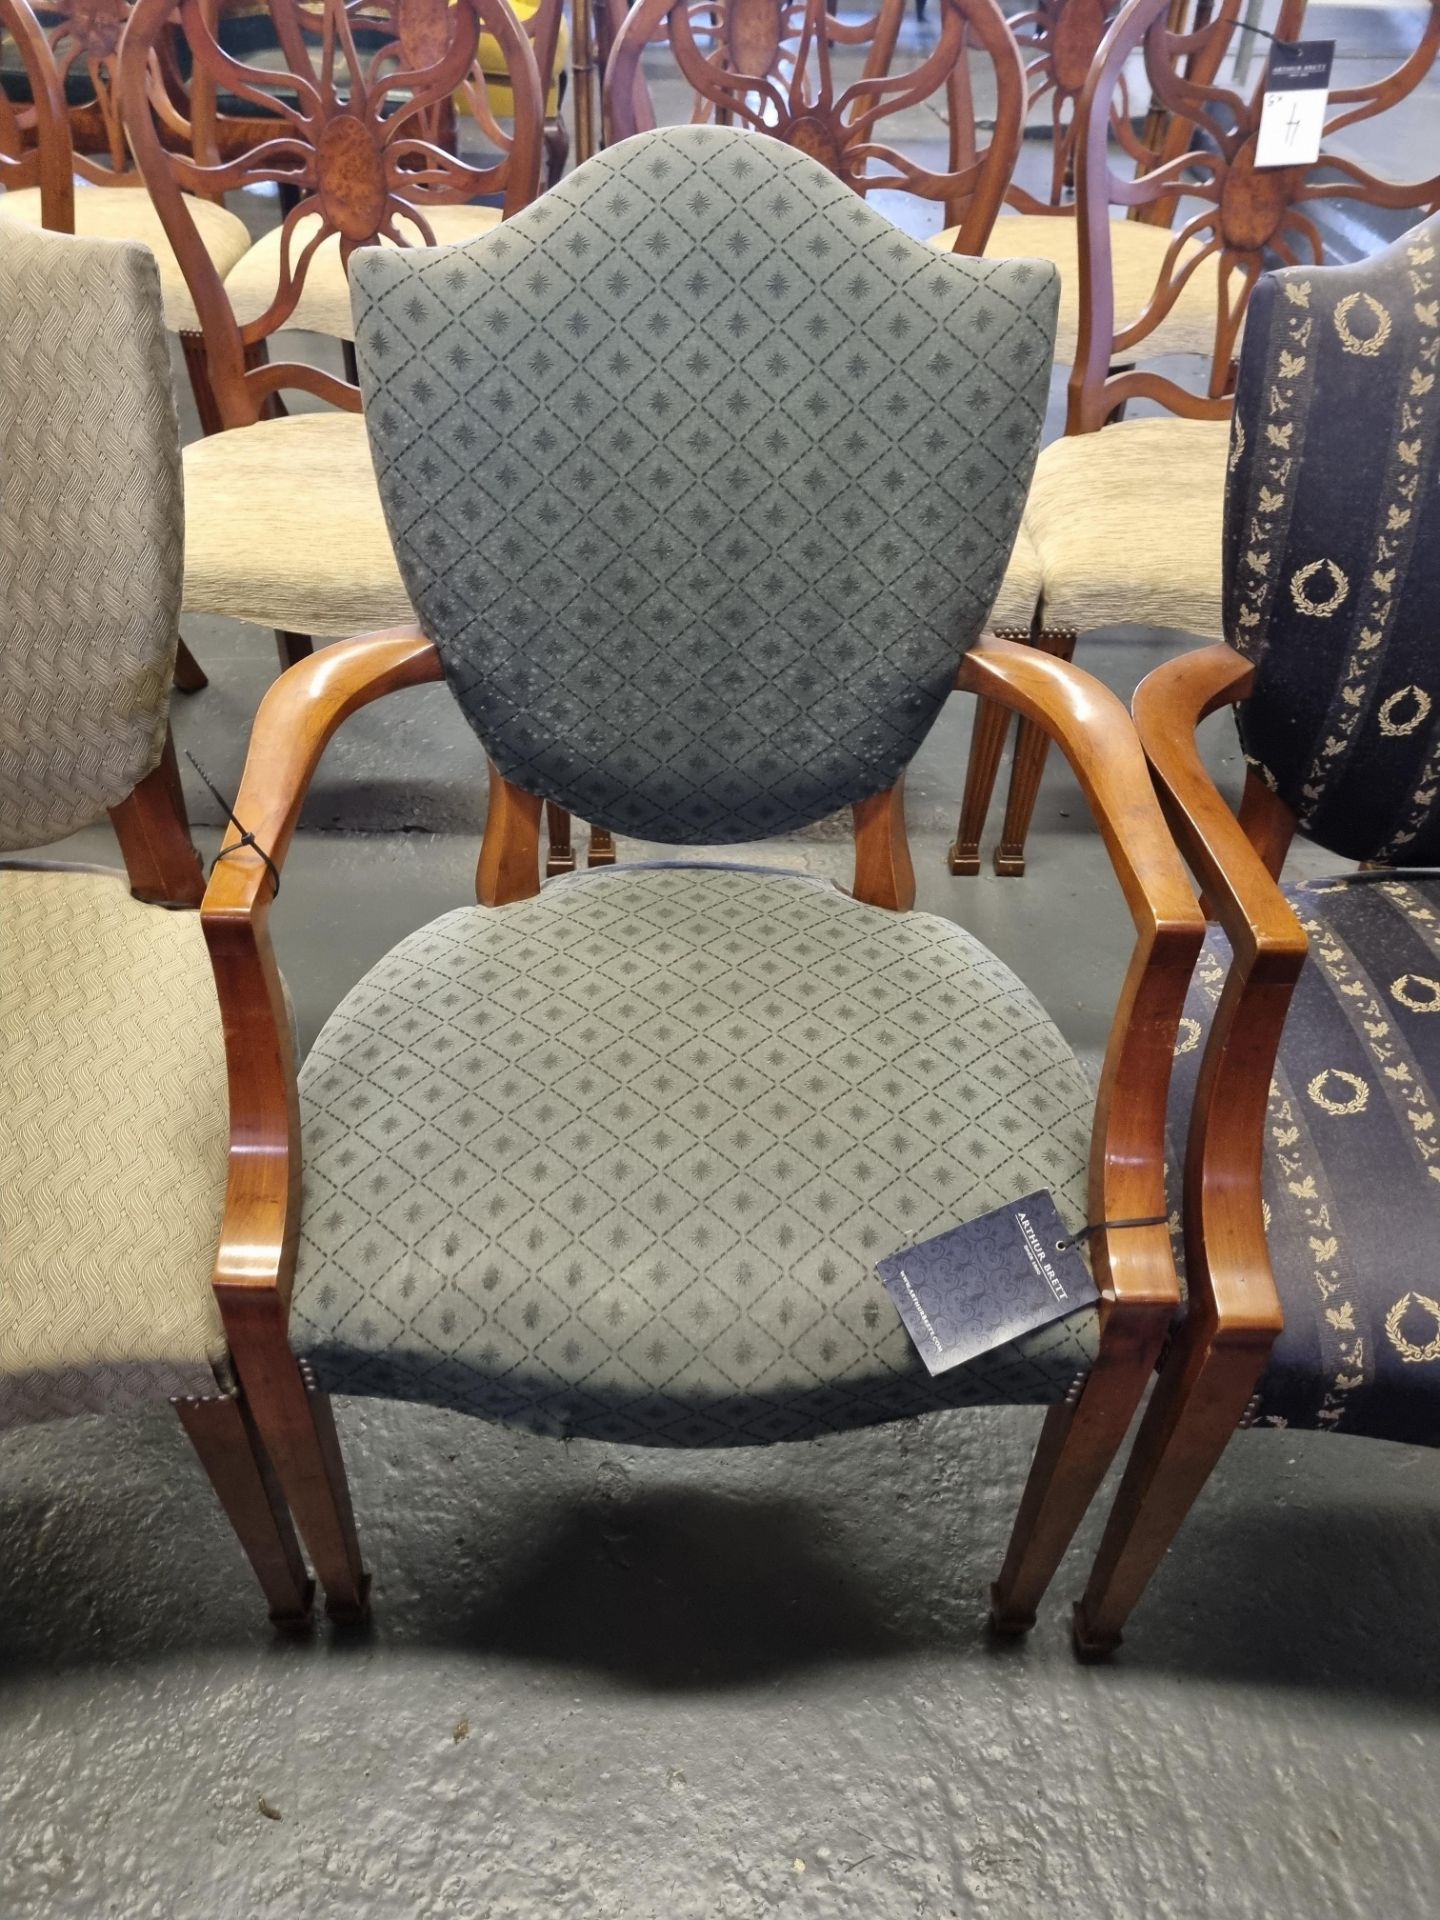 4 X Arthur Brett Upholstered Shield Back Chairs In Assorted Bespoke Upholstery The Shield Back Shape - Bild 5 aus 5